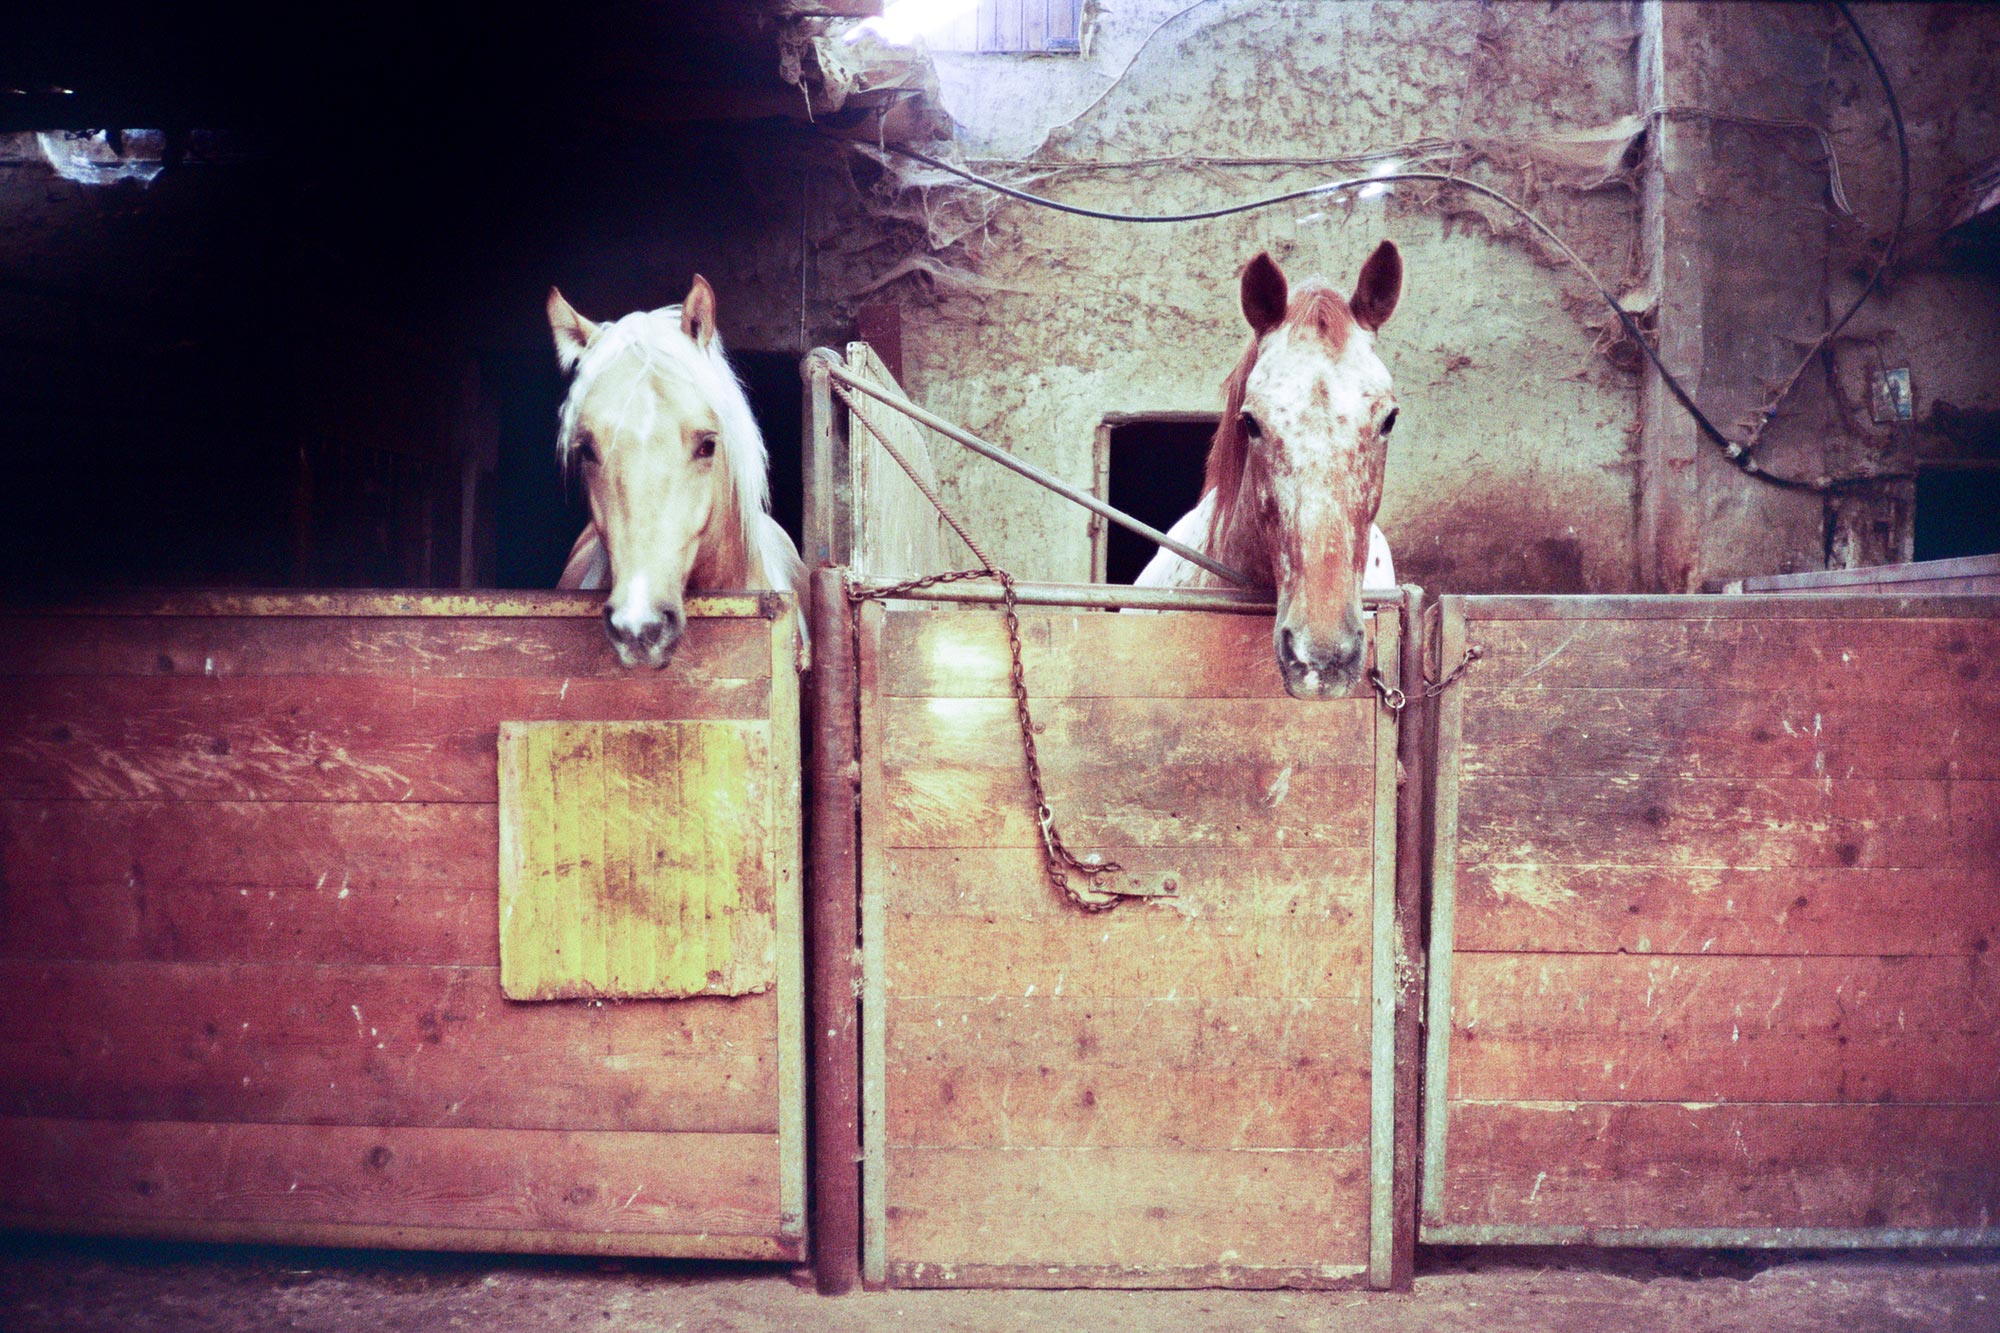 Piacenza Veano marce farm horses